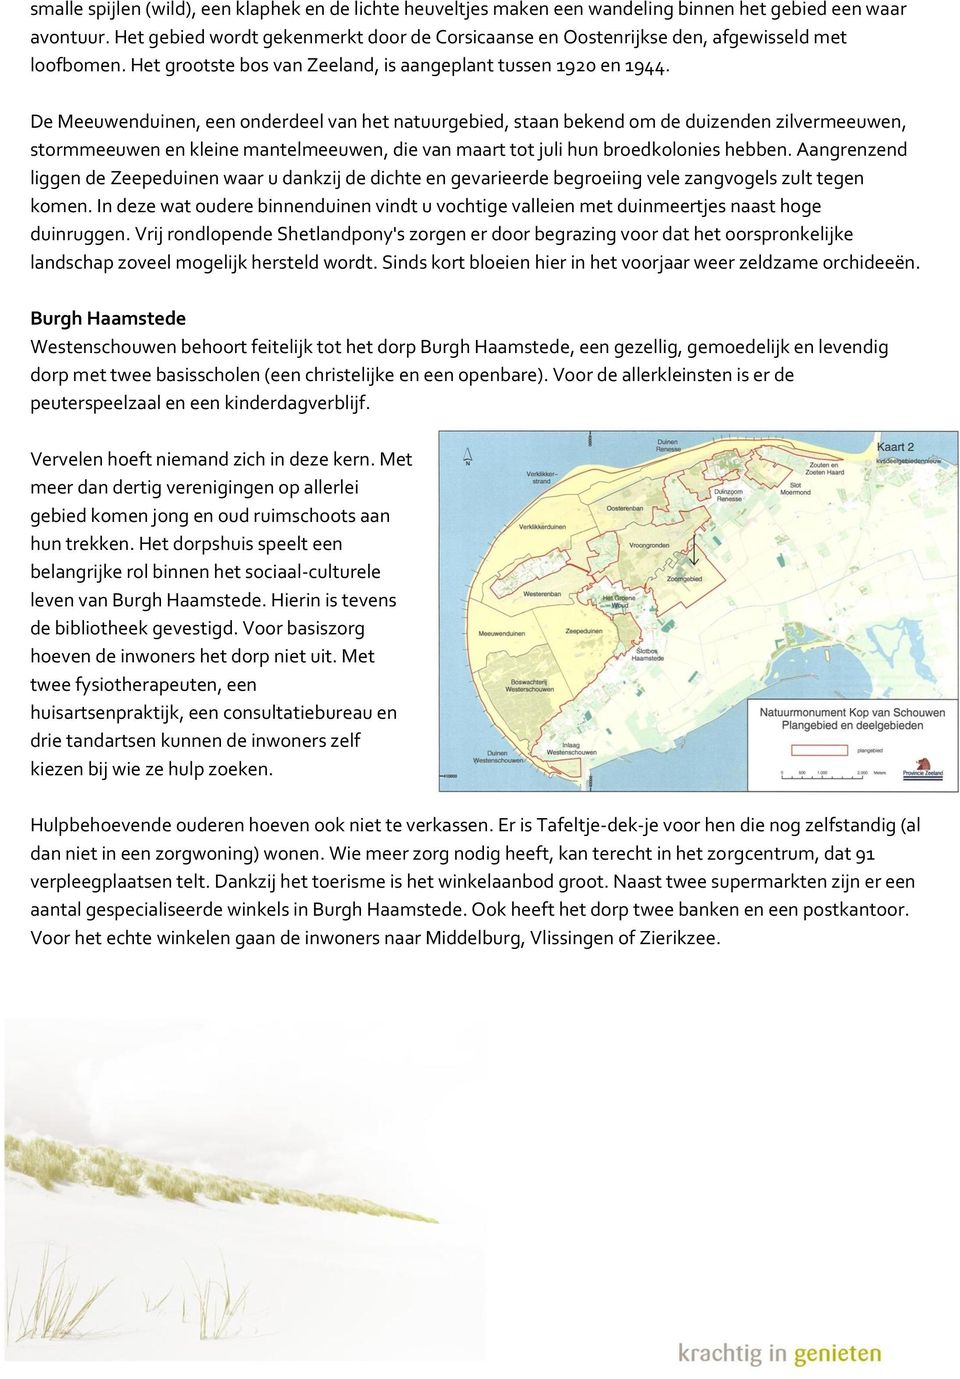 De Meeuwenduinen, een onderdeel van het natuurgebied, staan bekend om de duizenden zilvermeeuwen, stormmeeuwen en kleine mantelmeeuwen, die van maart tot juli hun broedkolonies hebben.